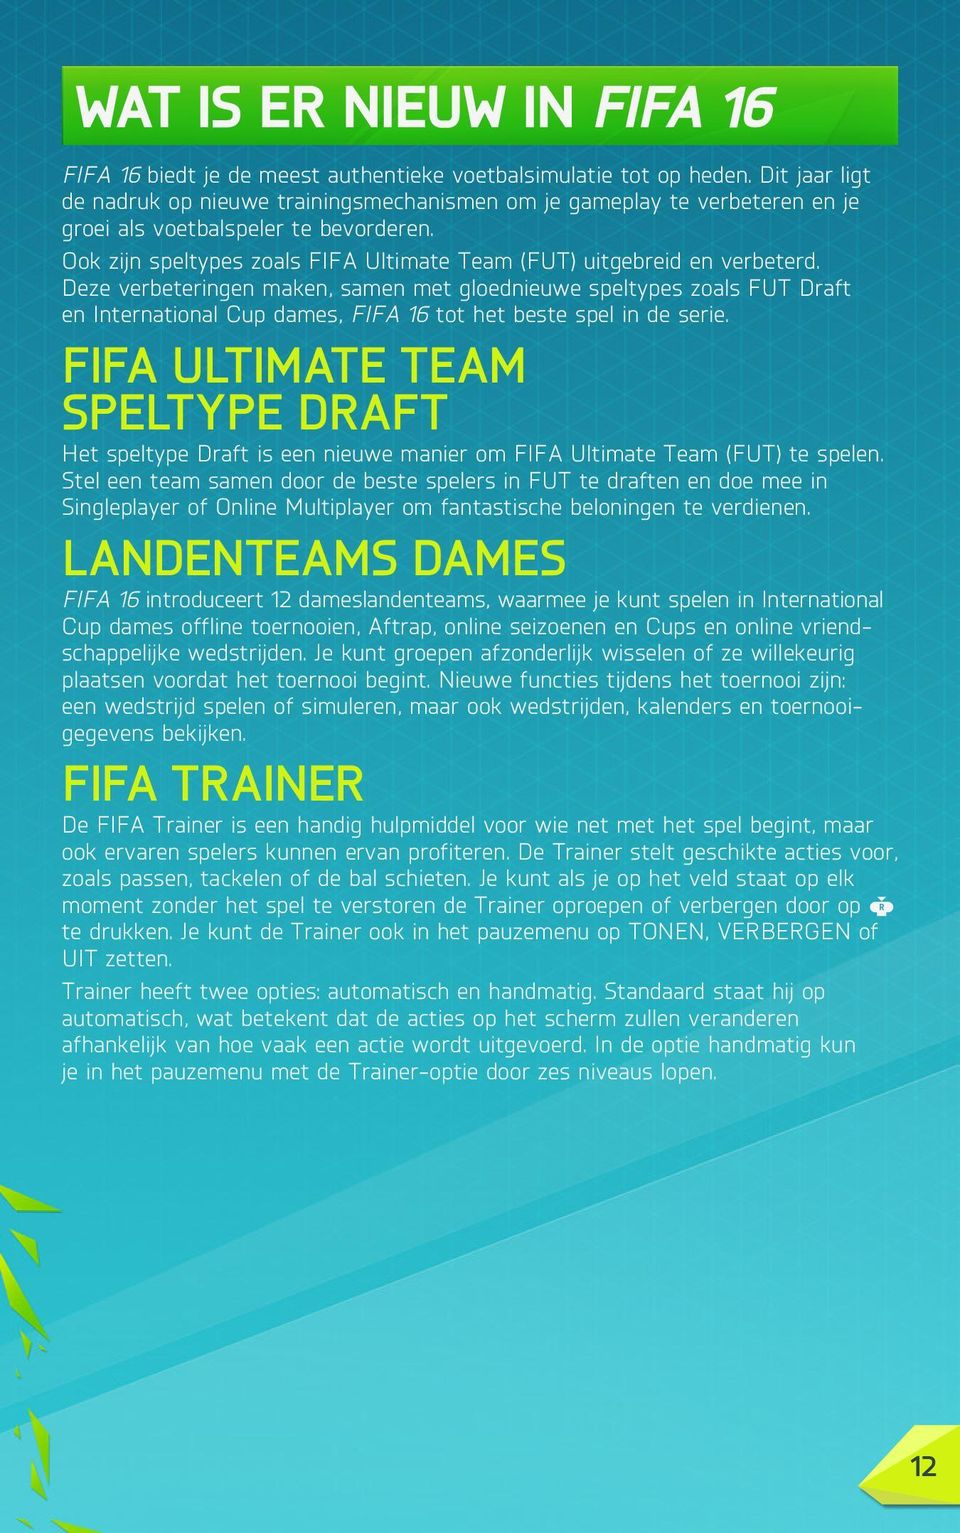 Ook zijn speltypes zoals FIFA Ultimate Team (FUT) uitgebreid en verbeterd.